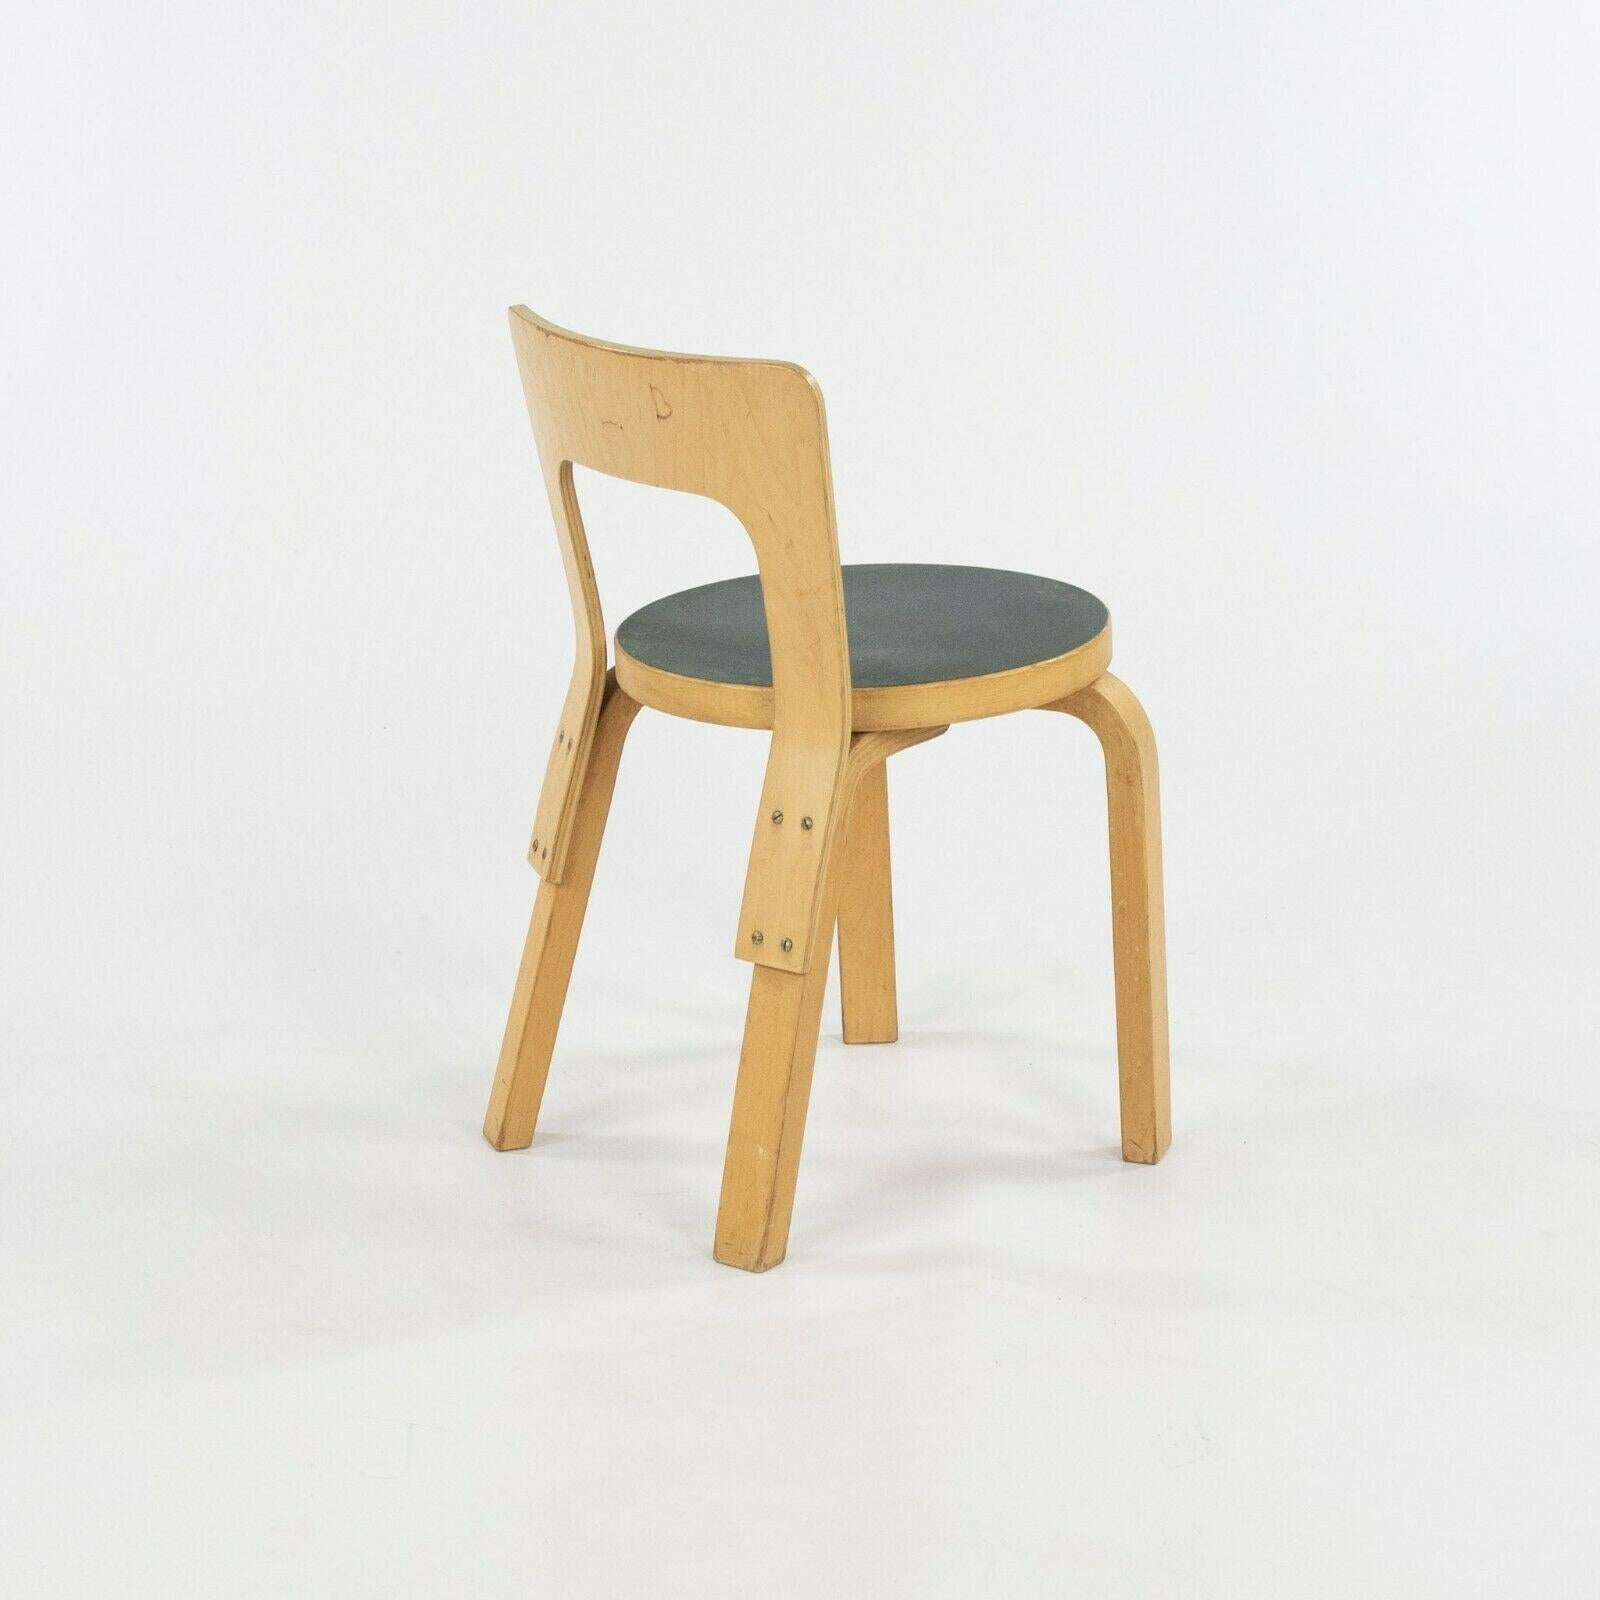 La vente porte sur une paire de chaises d'enfant N65 datant des années 1950, conçues par Alvar et Aino Aalto et produites par Artek en Finlande. Ces chaises ont été commandées avec des sièges en stratifié bleu/vert et une construction en